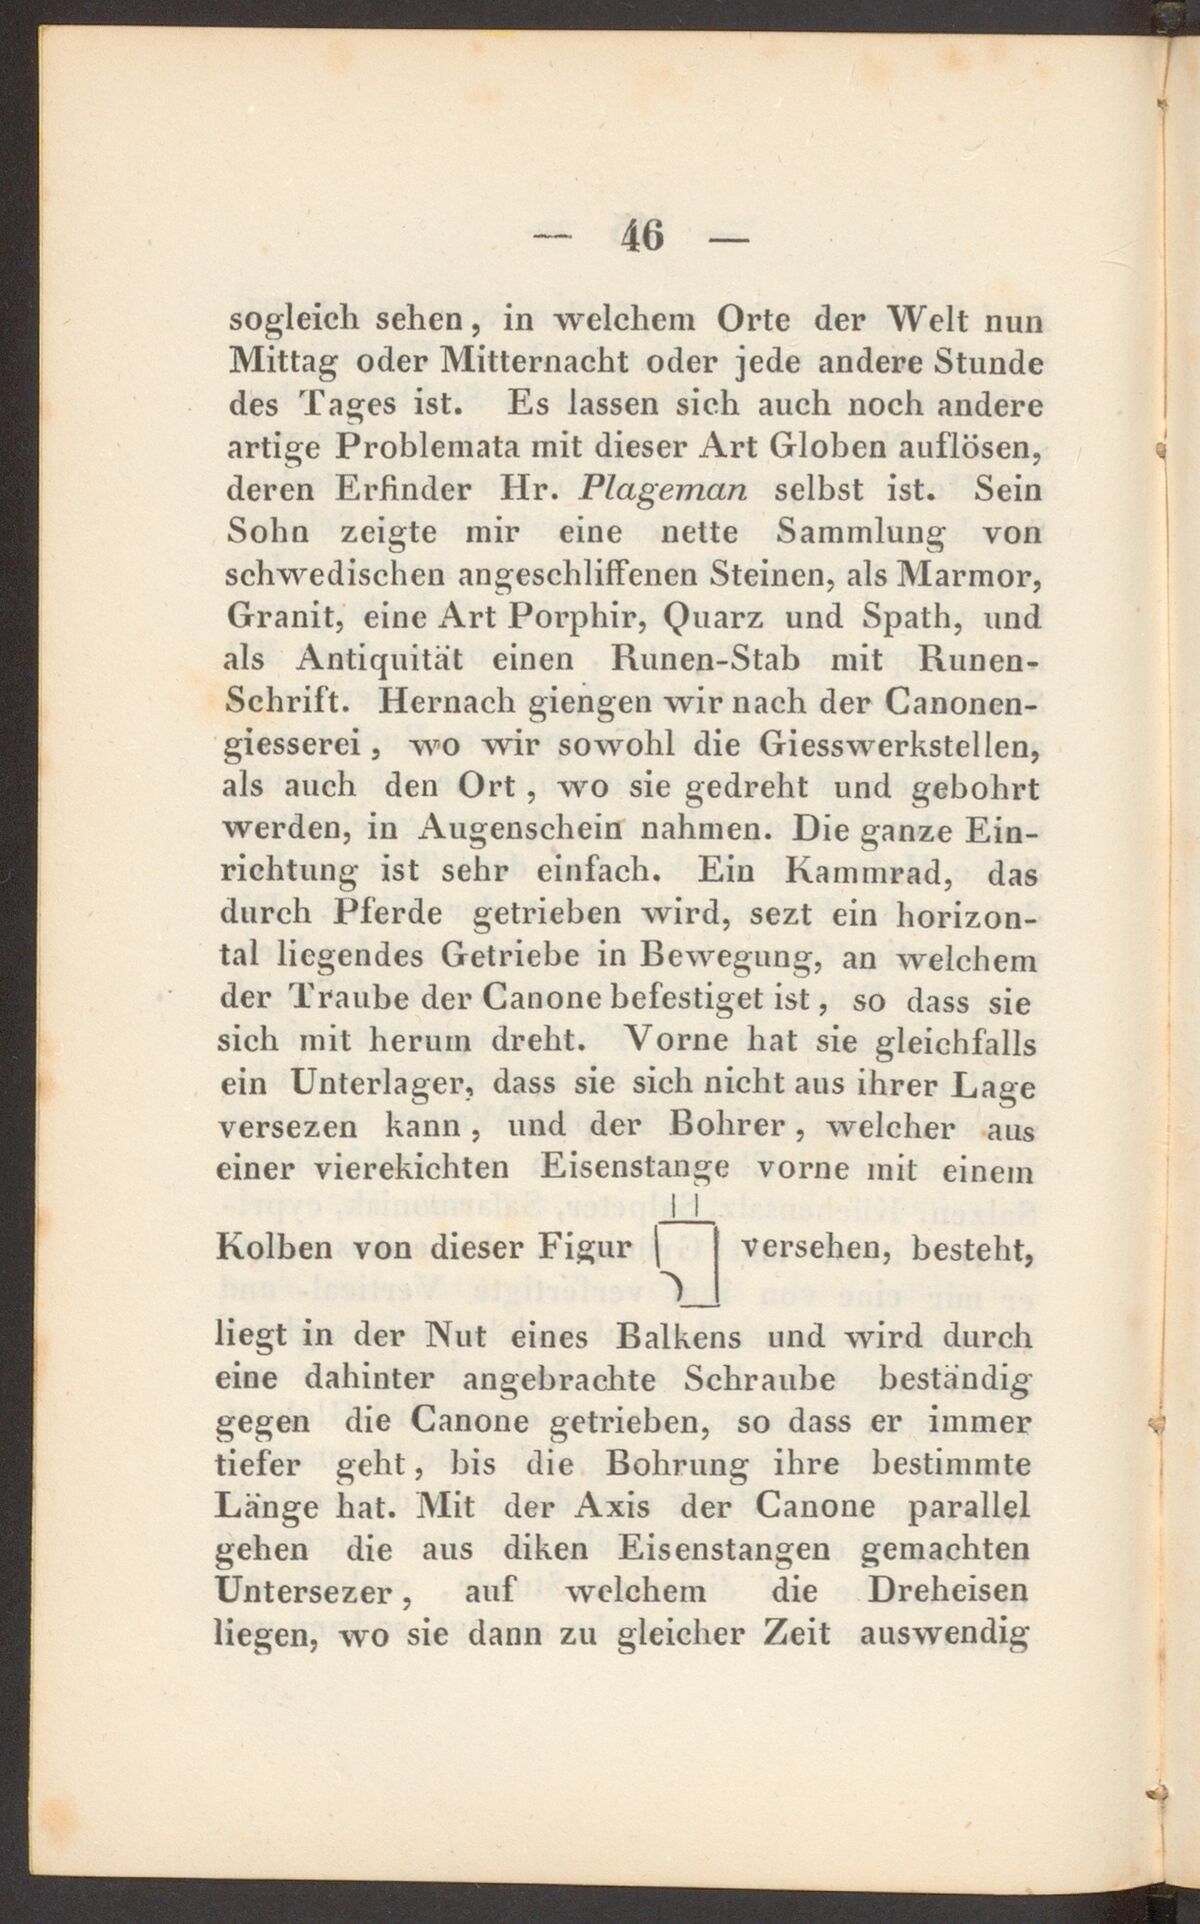 GFD 3/207: Zeichnung eines Bohrkopfs (Fischers Reisetagebuch 1794, Seite 46)